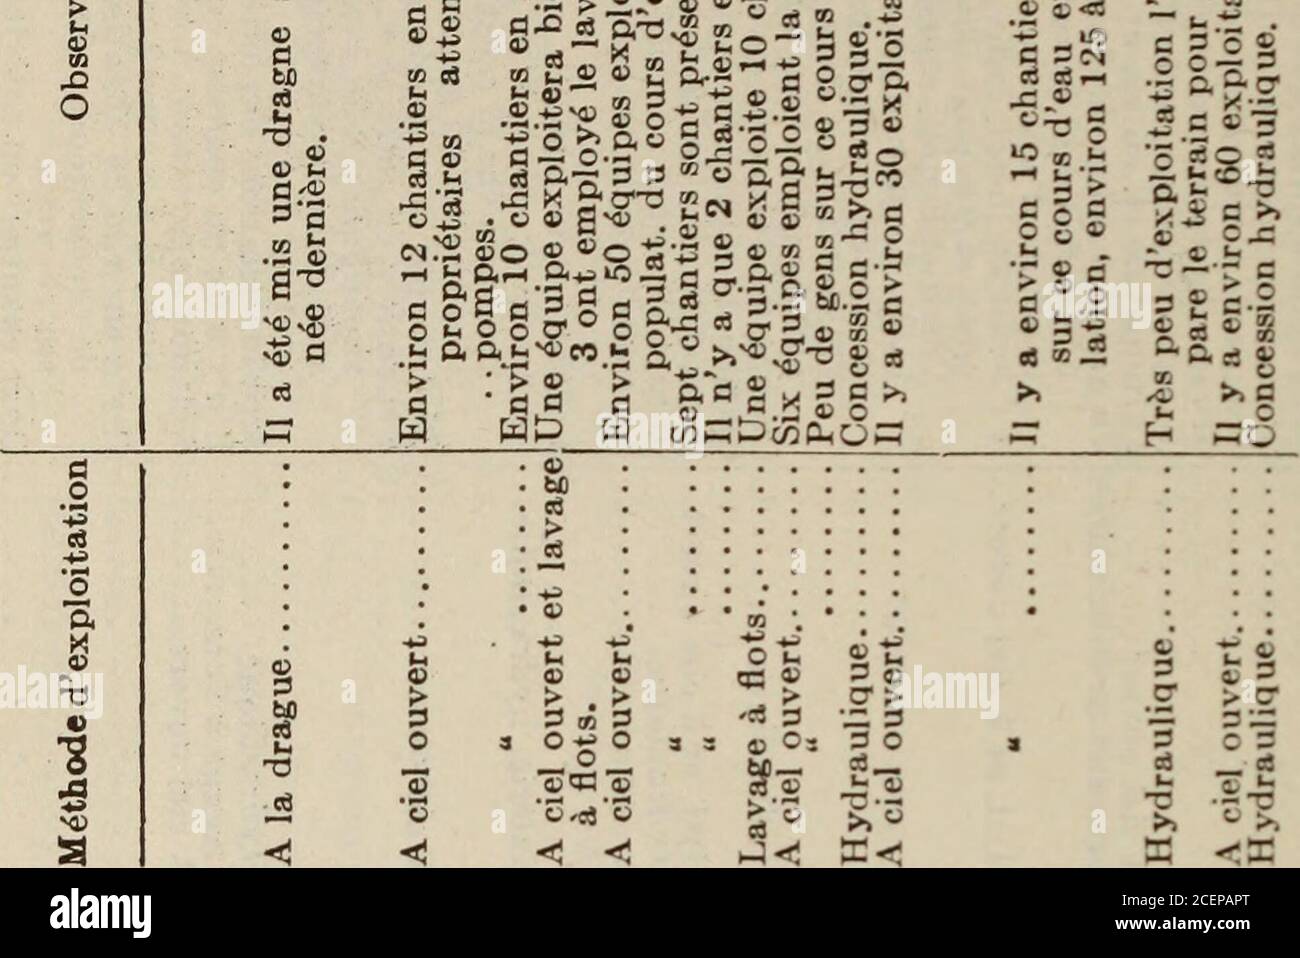 Documents De La Session De La Puissance Du Canada 1909 Volume 43 No 14 Documents De